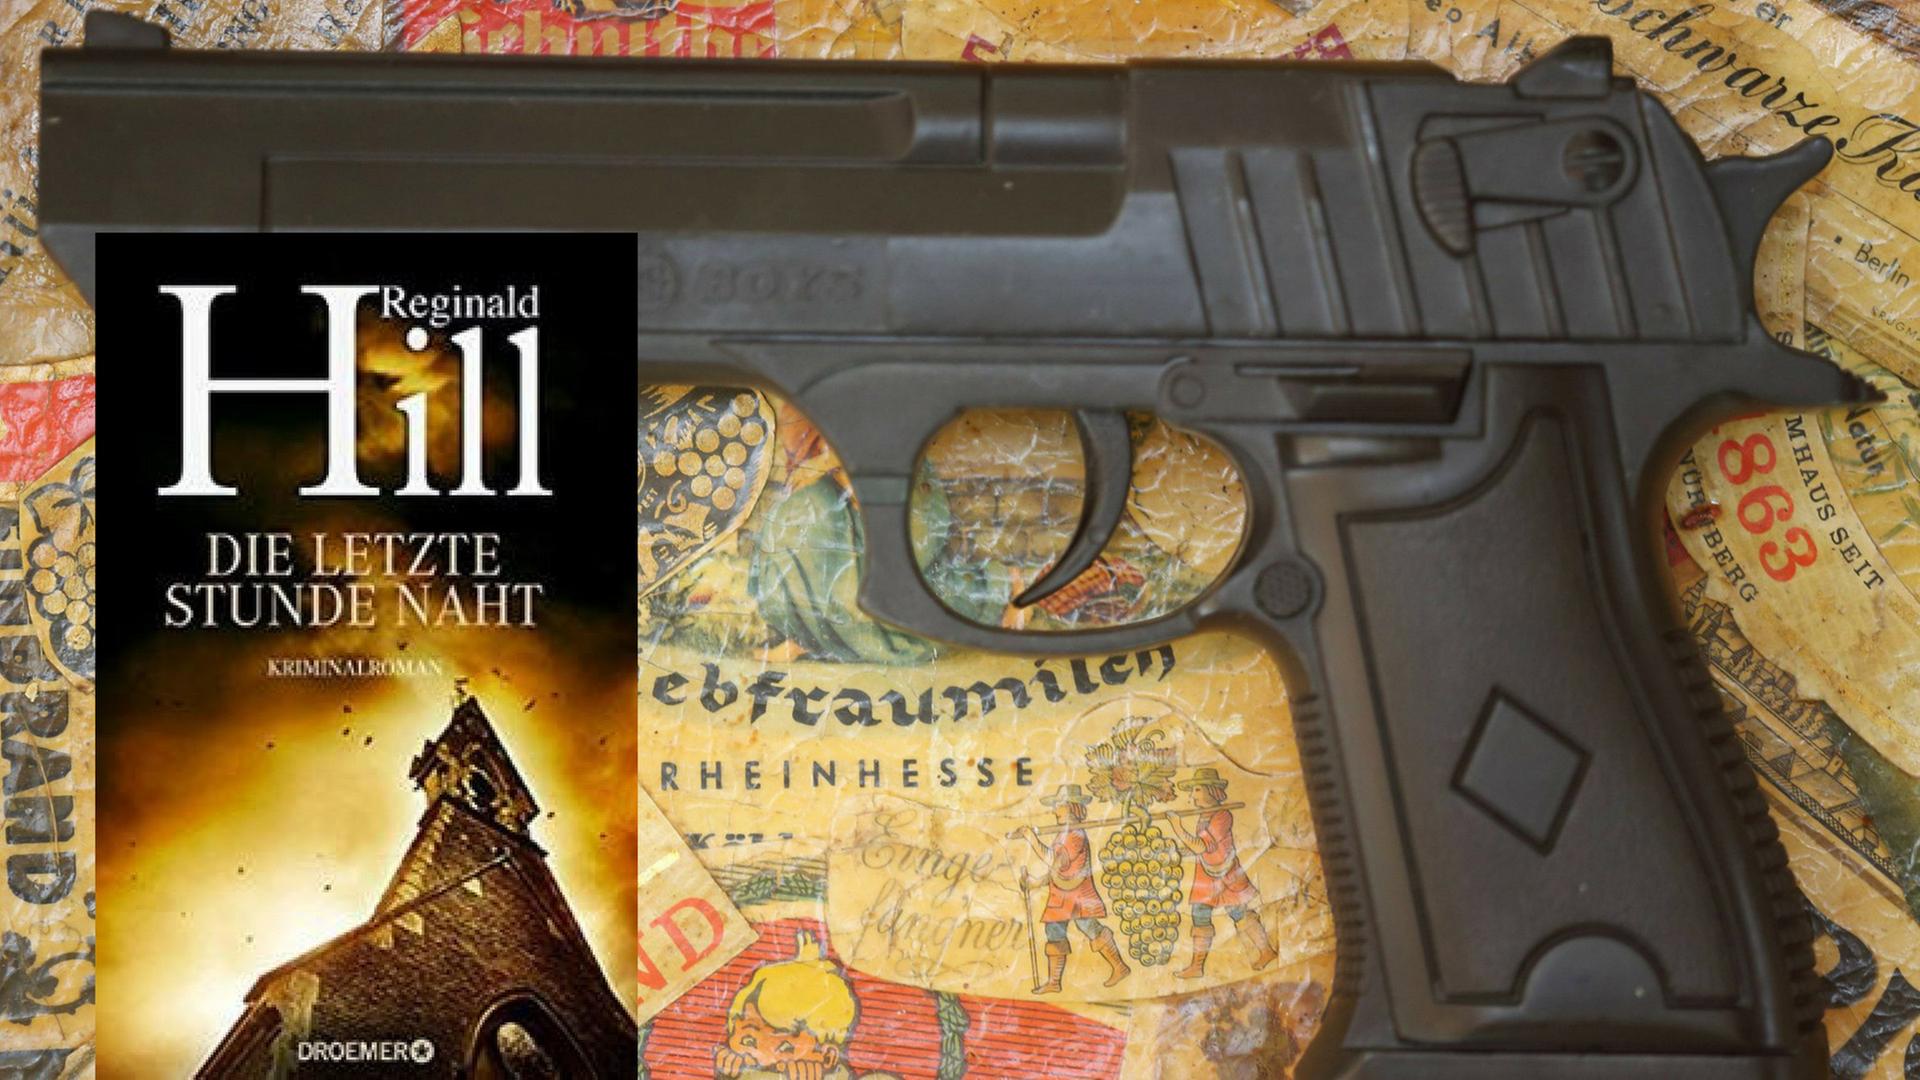 Buchcover von "Reginald Hill: "Die letzte Stunde naht" und Pistole auf einem Tablett